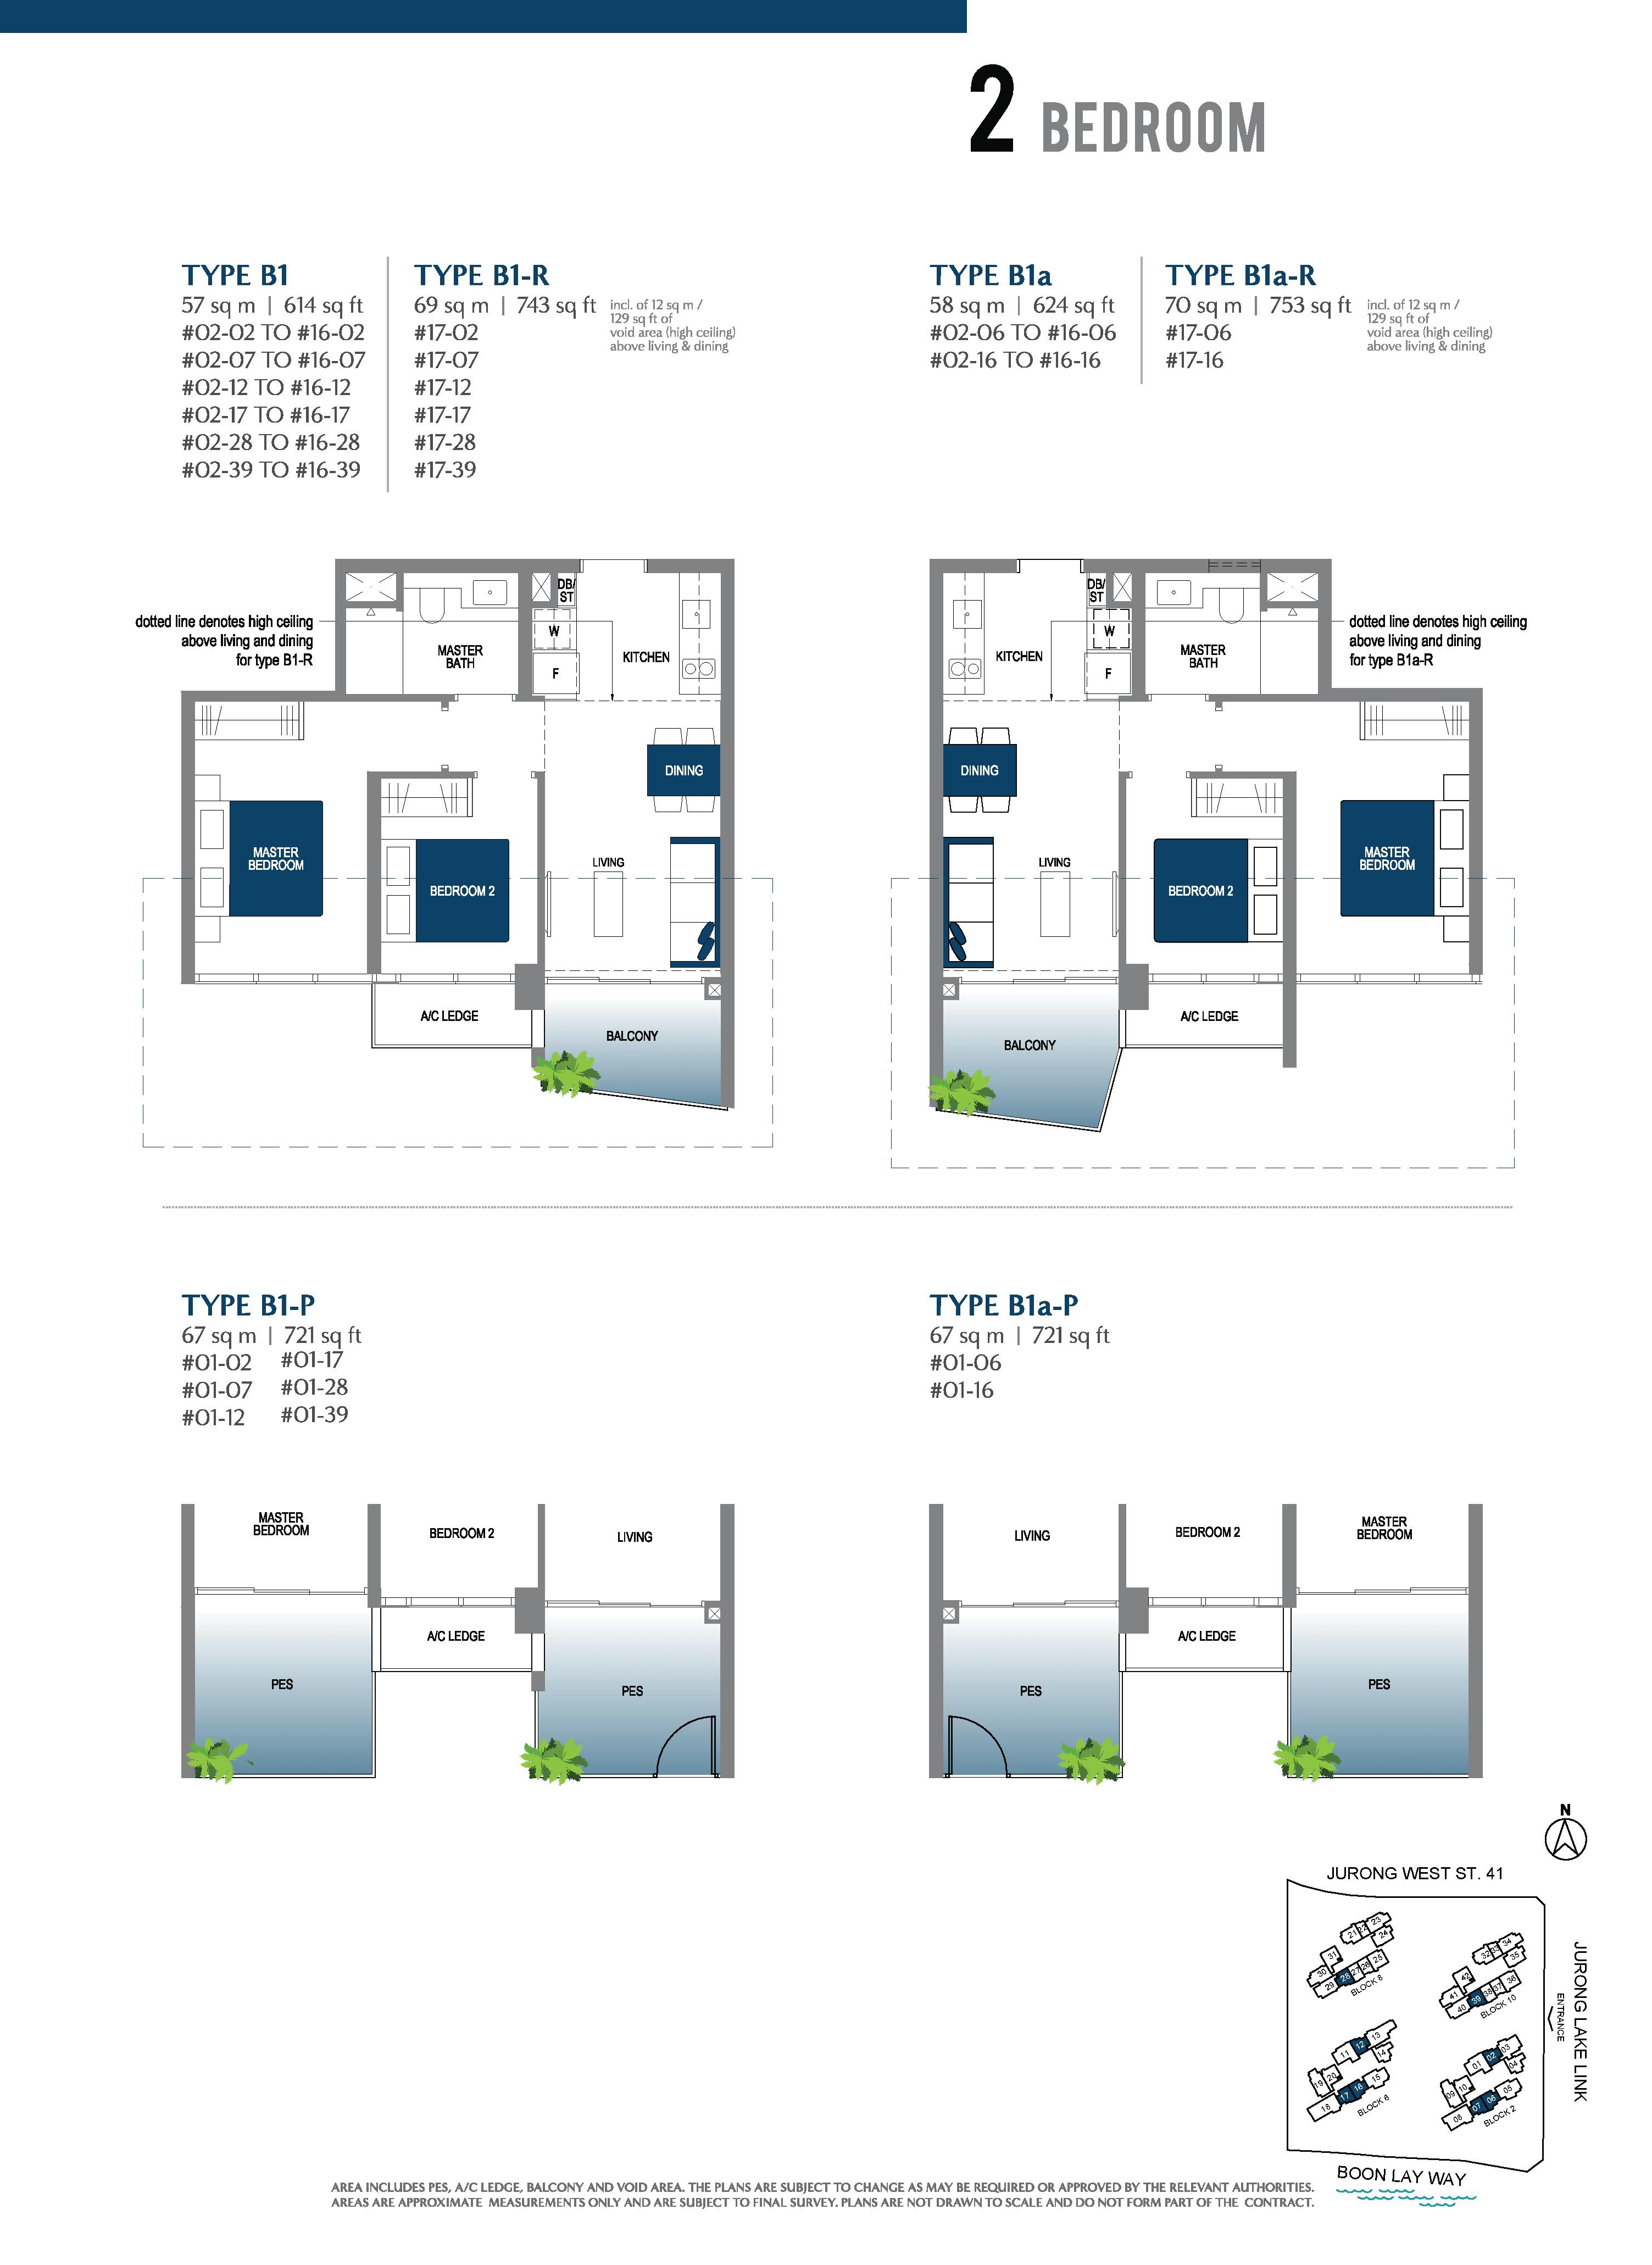 Lake Grande 2 Bedroom Type B1, B1-R, B1a, B1a-R, B1-P, B1a-P Floor Plans